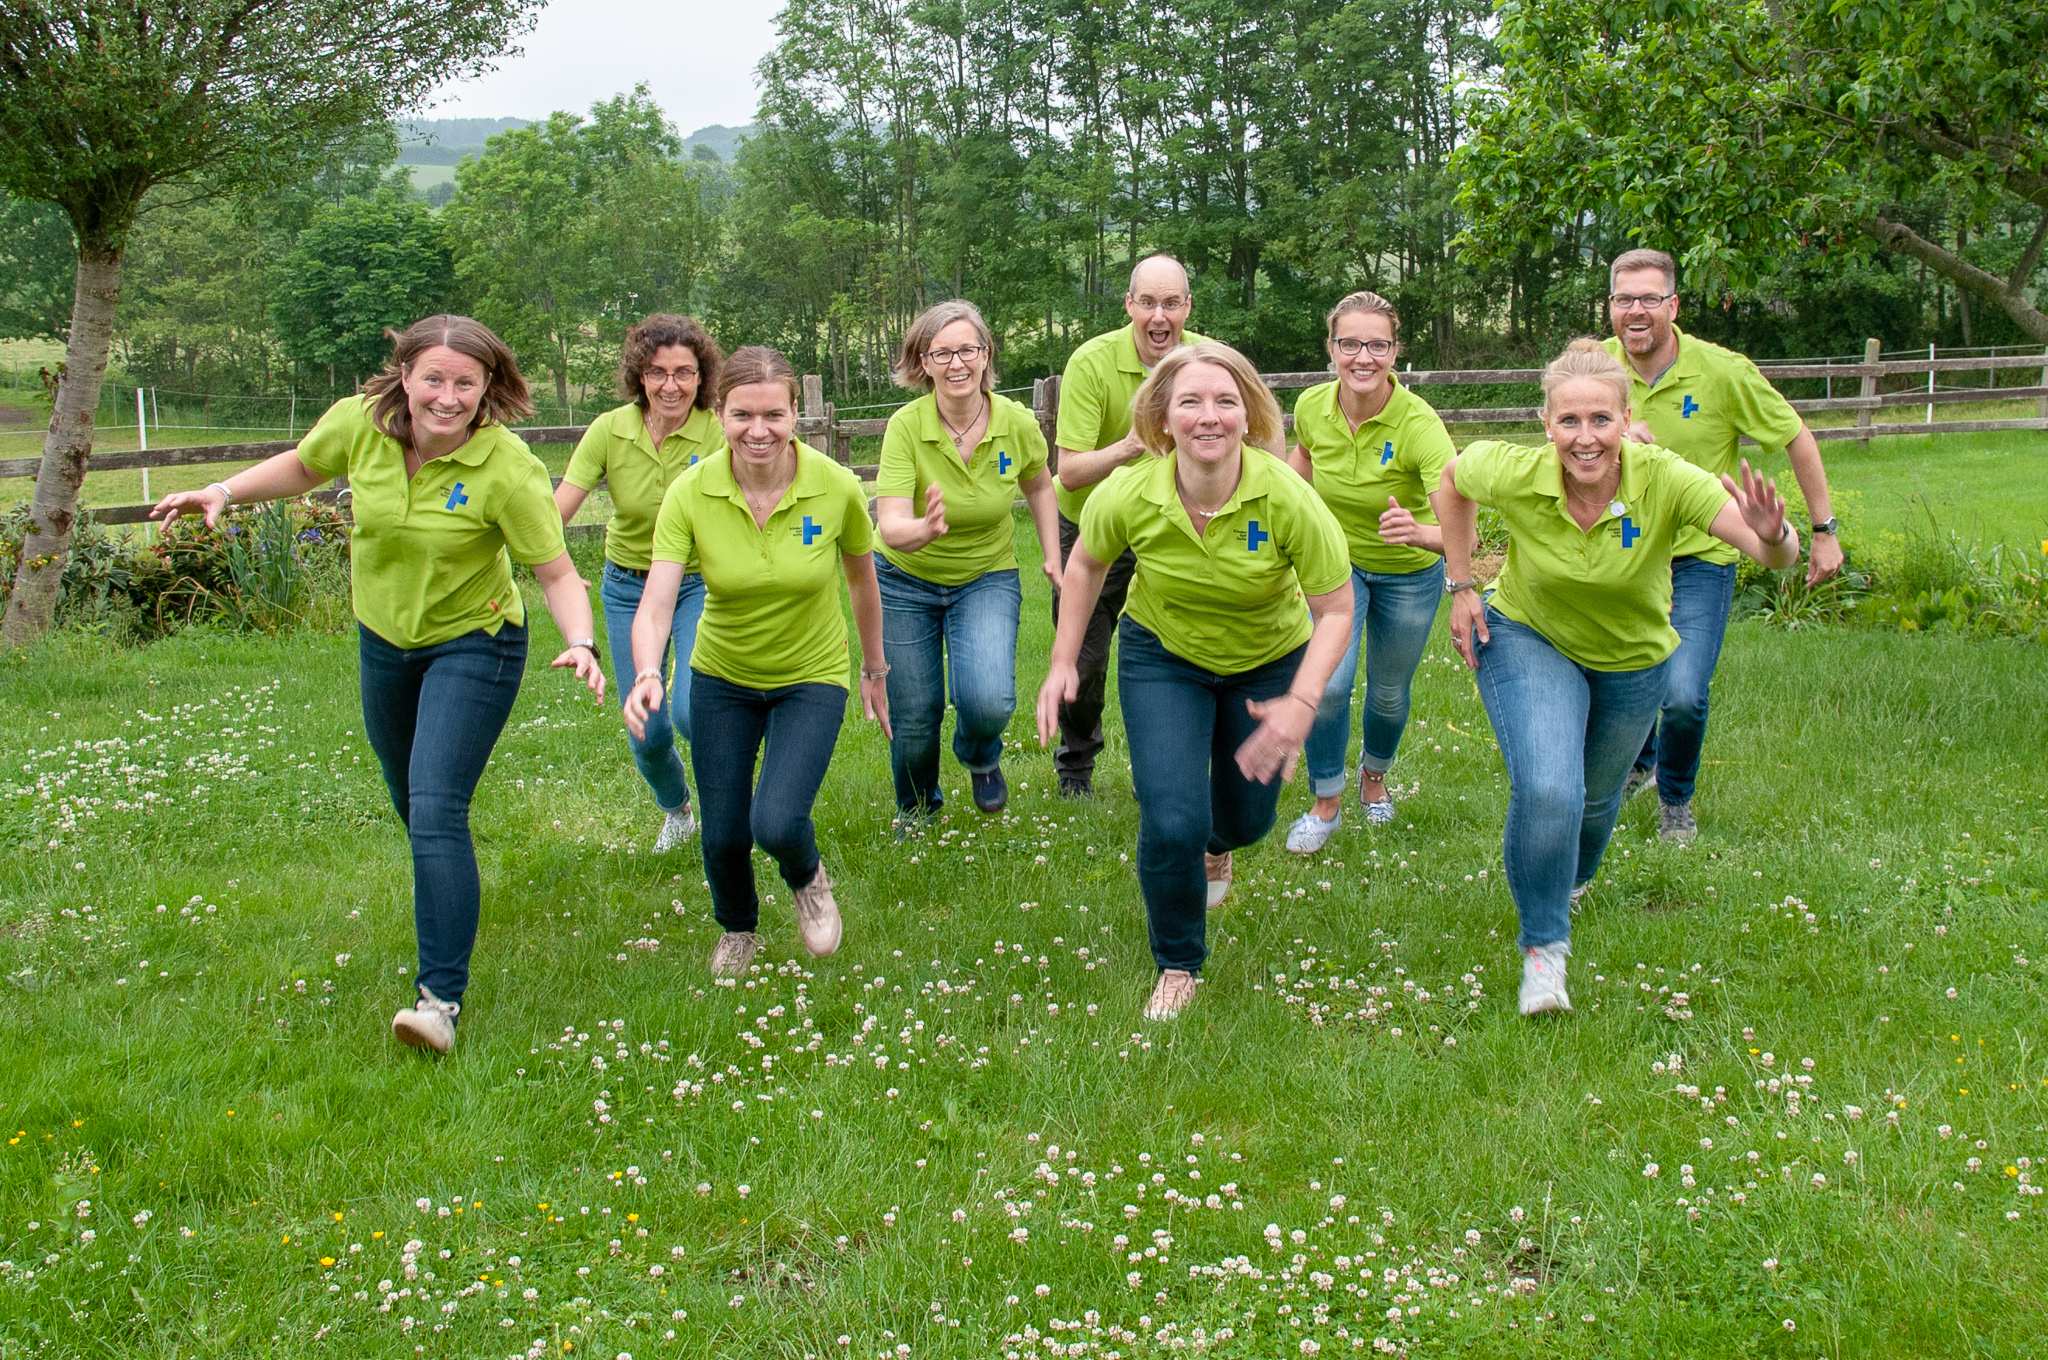 Männer und Frauen in grünen T-Shirts laufen über eine Wiese auf den Fotografen zu (Quelle: privat)